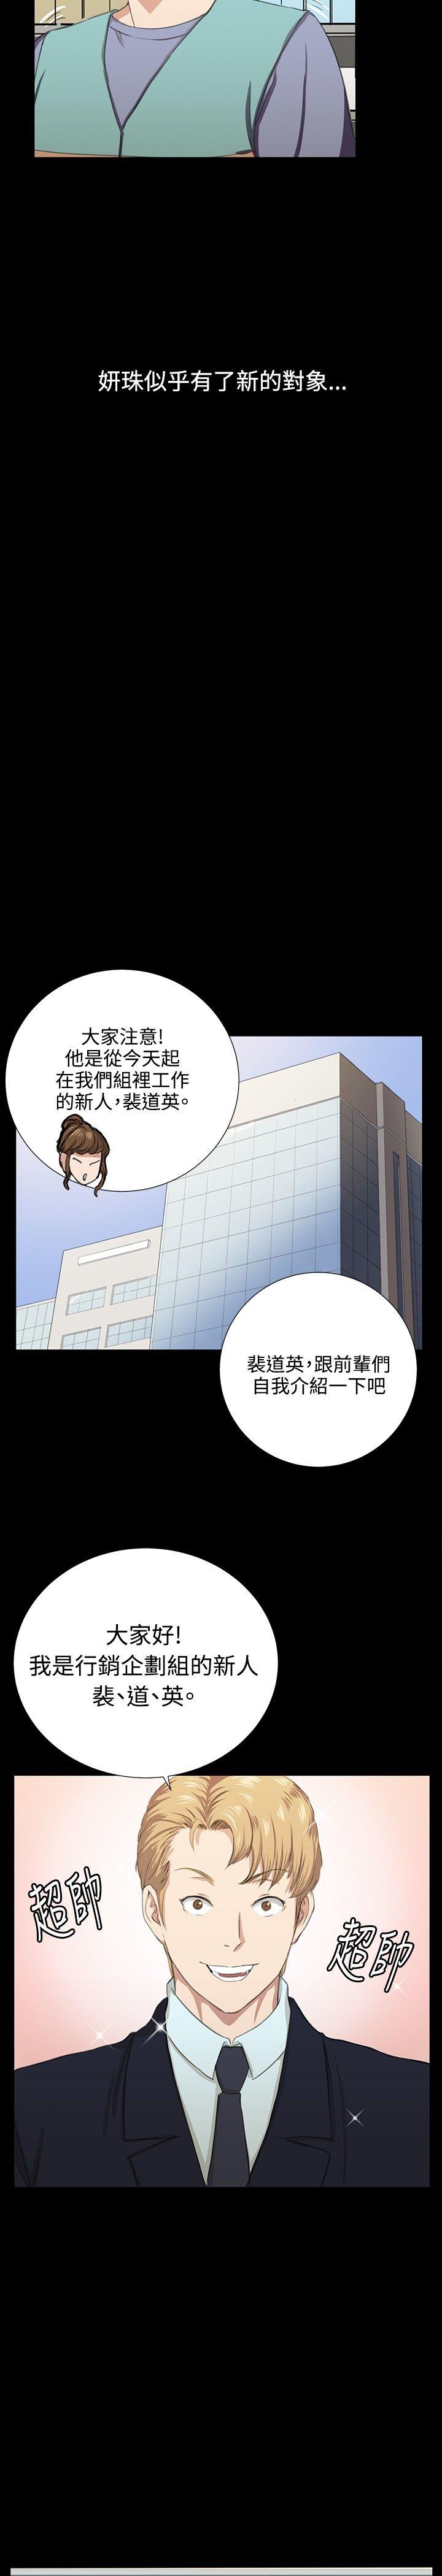 韩国污漫画 深夜便利店 最终话 9